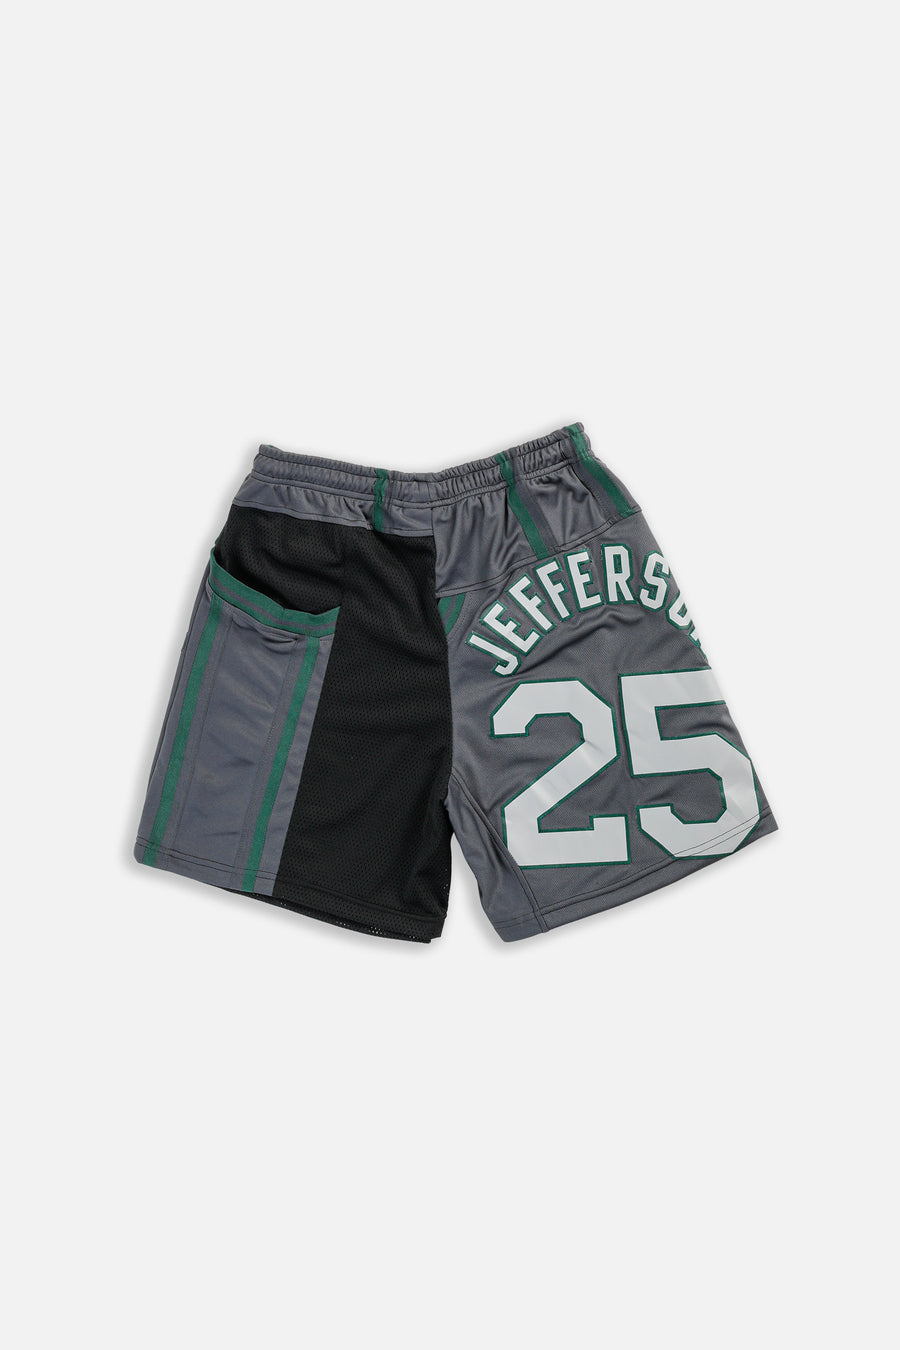 Unisex Rework Utah Jazz NBA Jersey Shorts - M